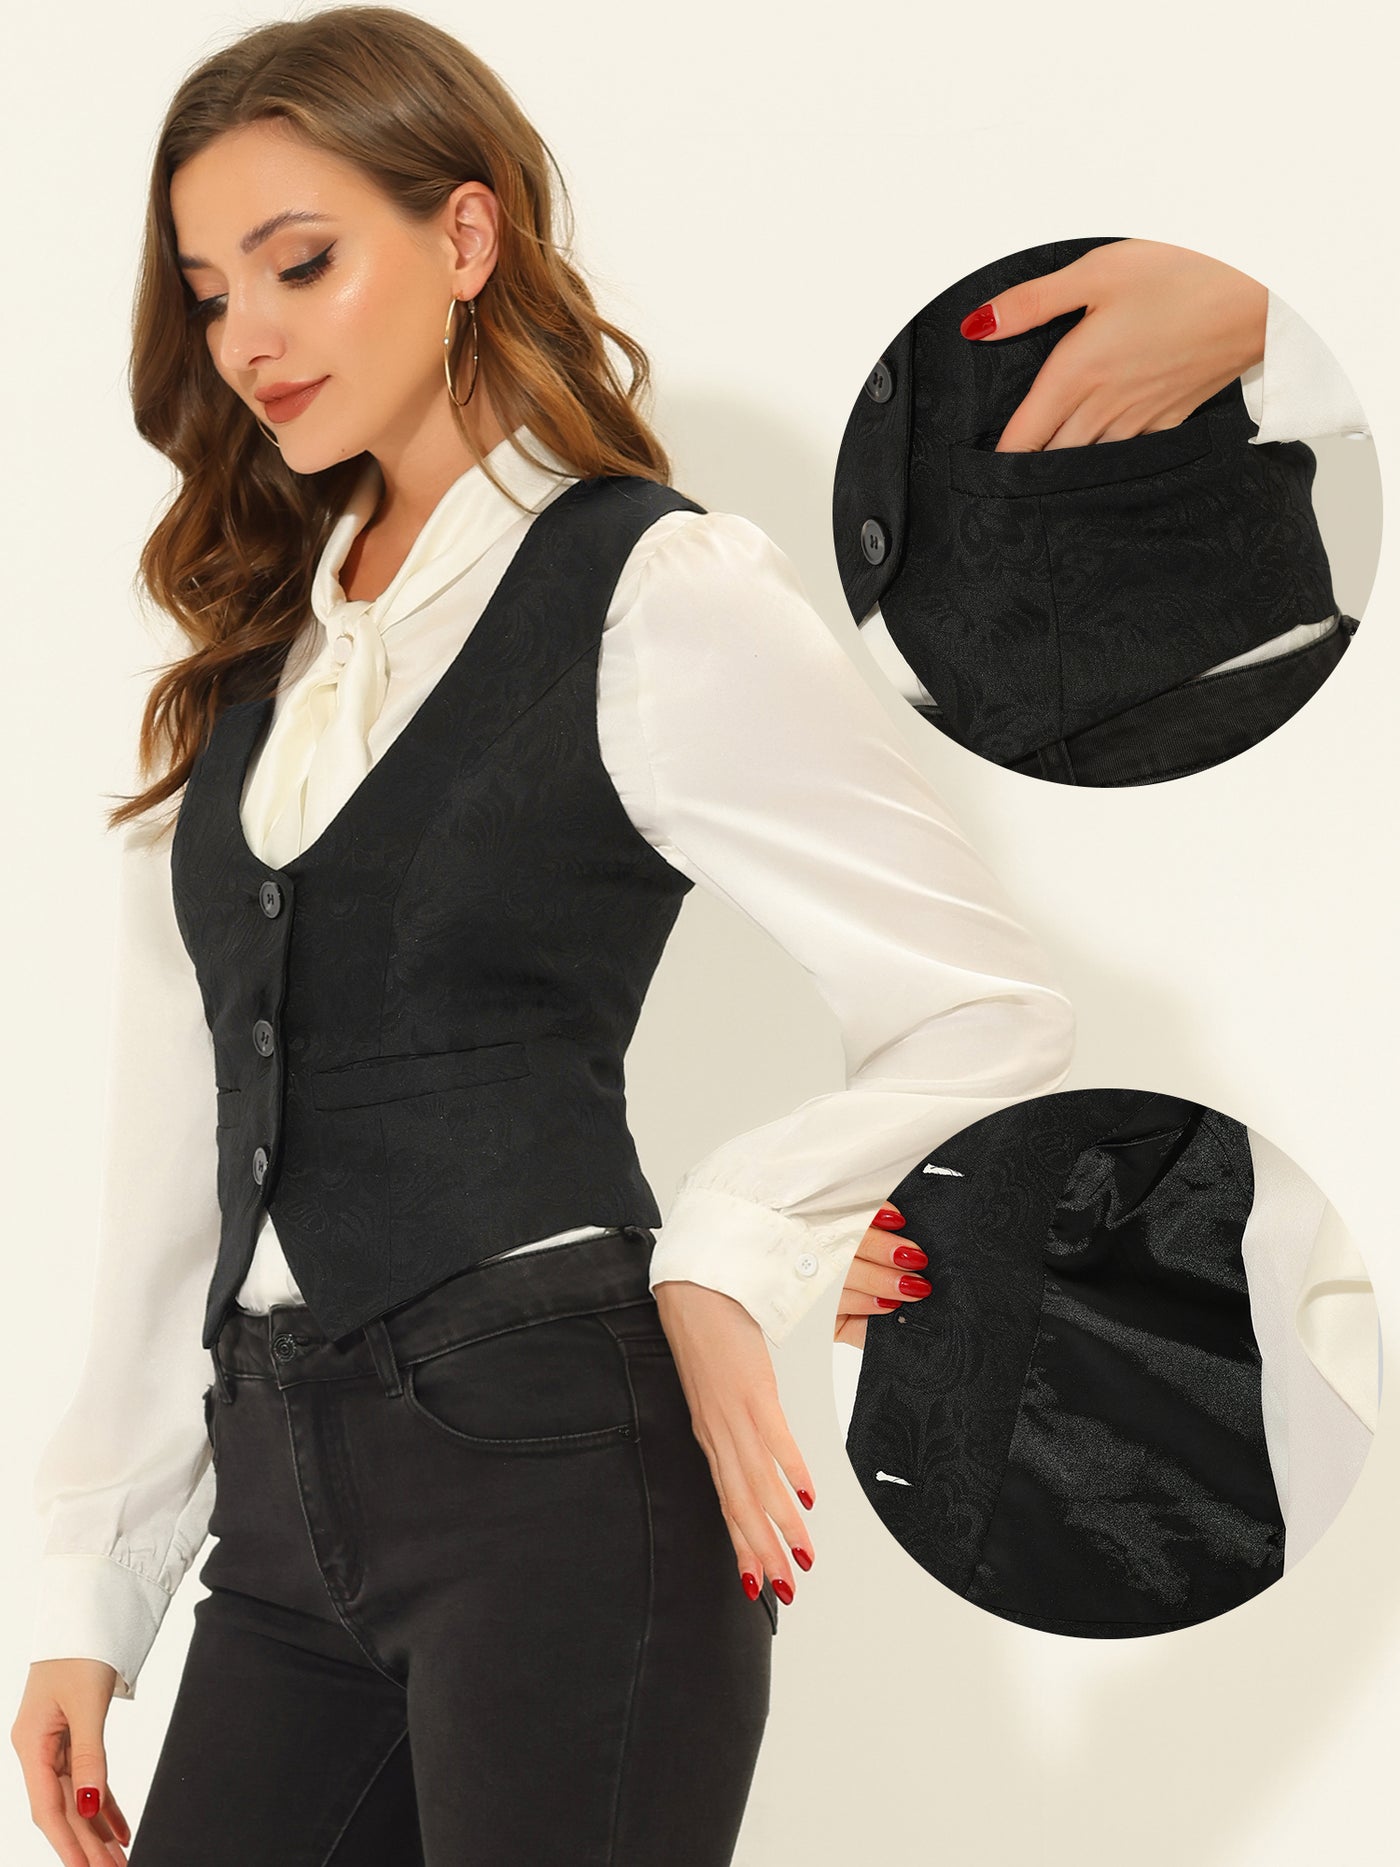 Allegra K Vintage Button Up Jacquard Steampunk Waistcoat Suit Vest